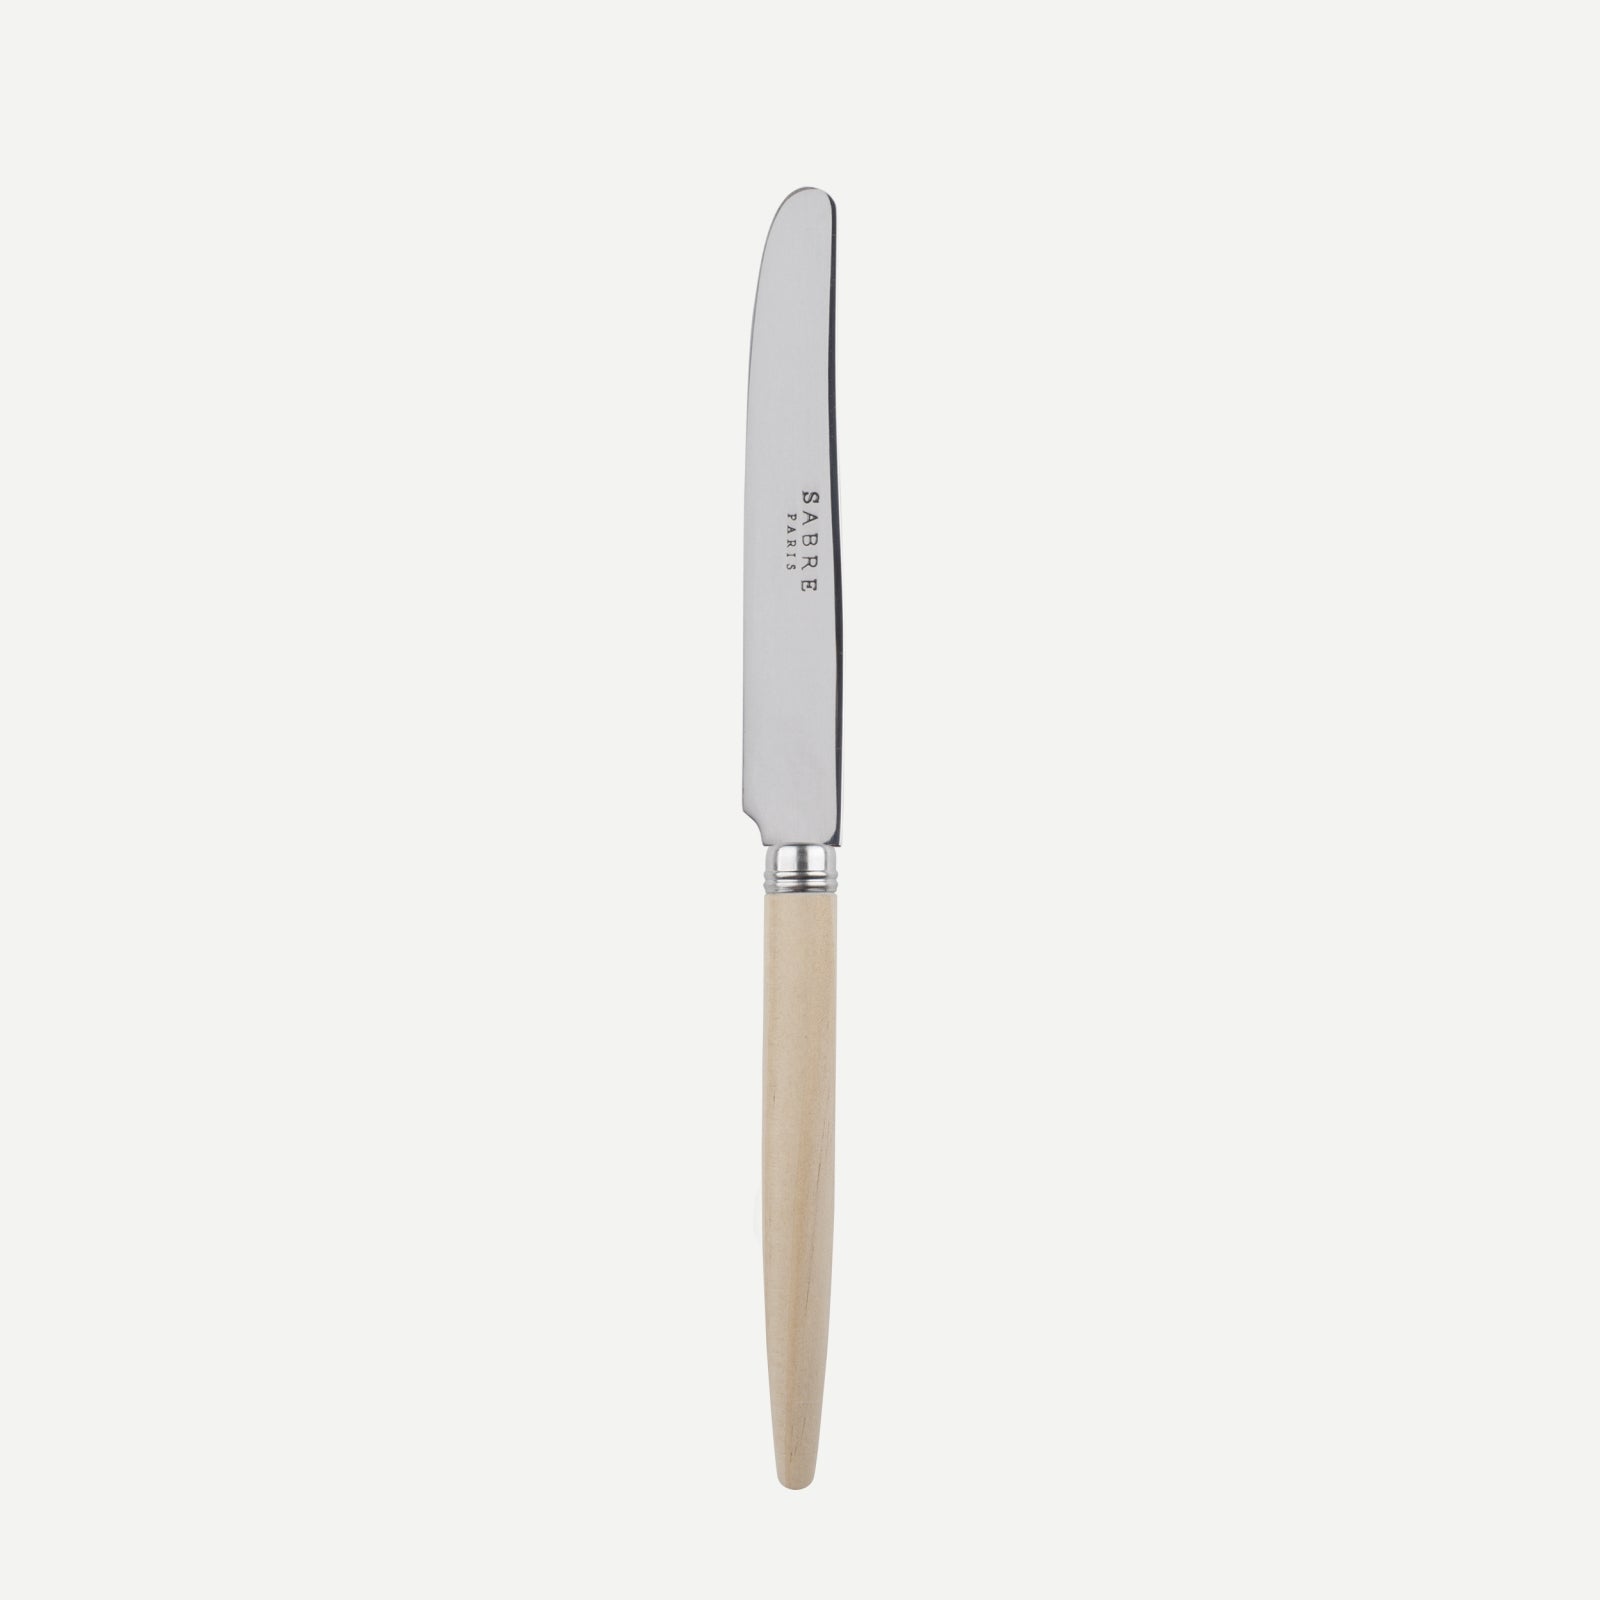 Breakfast knife - Jonc - Light wood